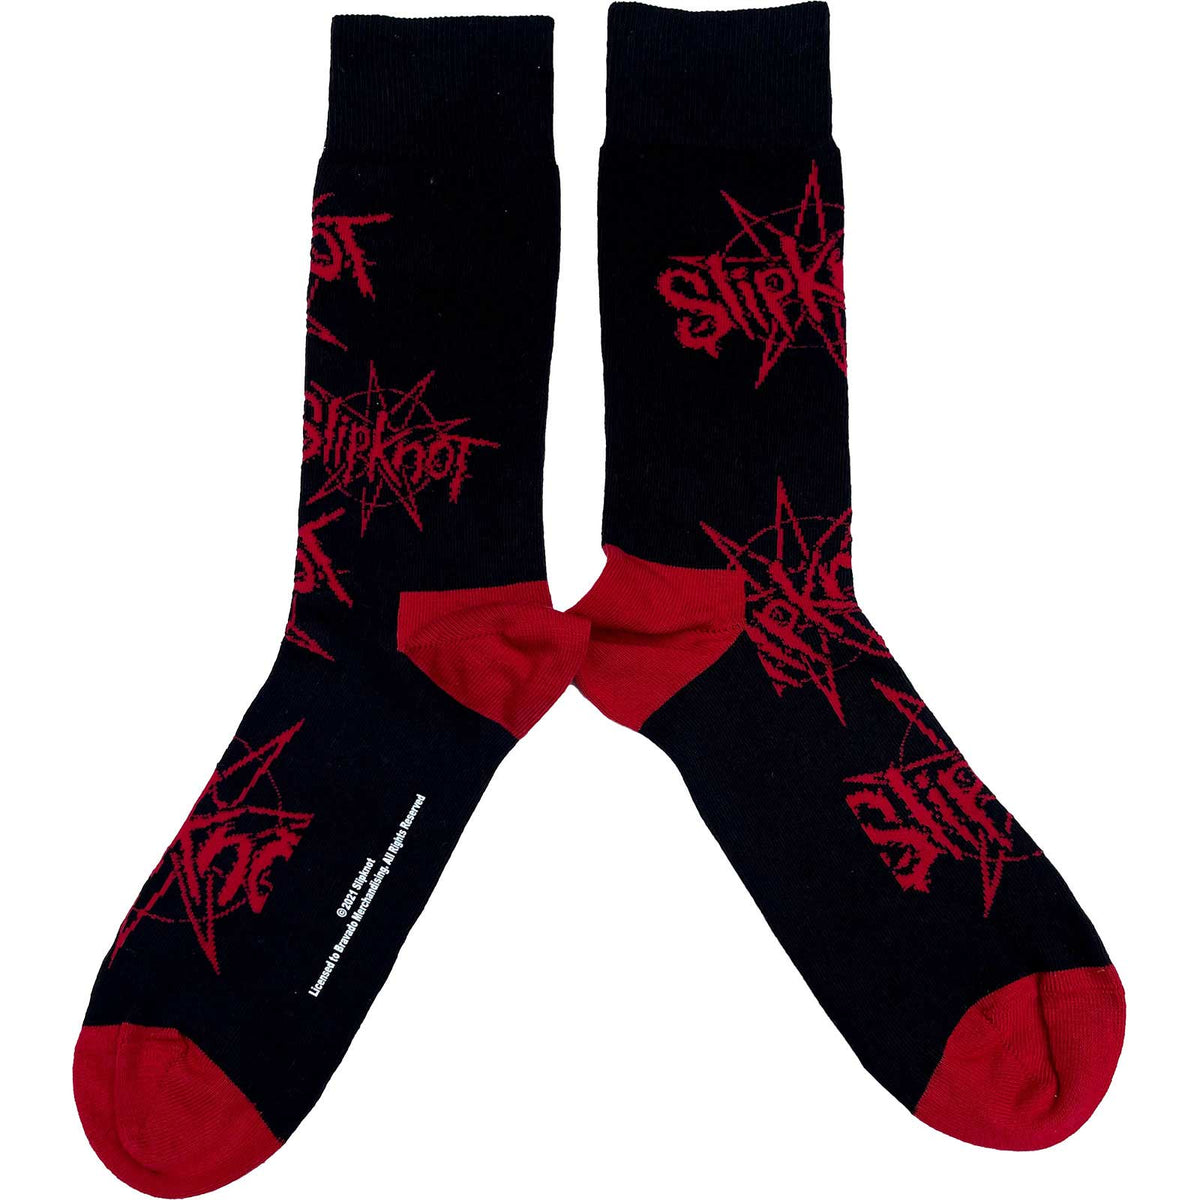 Slipknot Socks | Logo and Nonogram